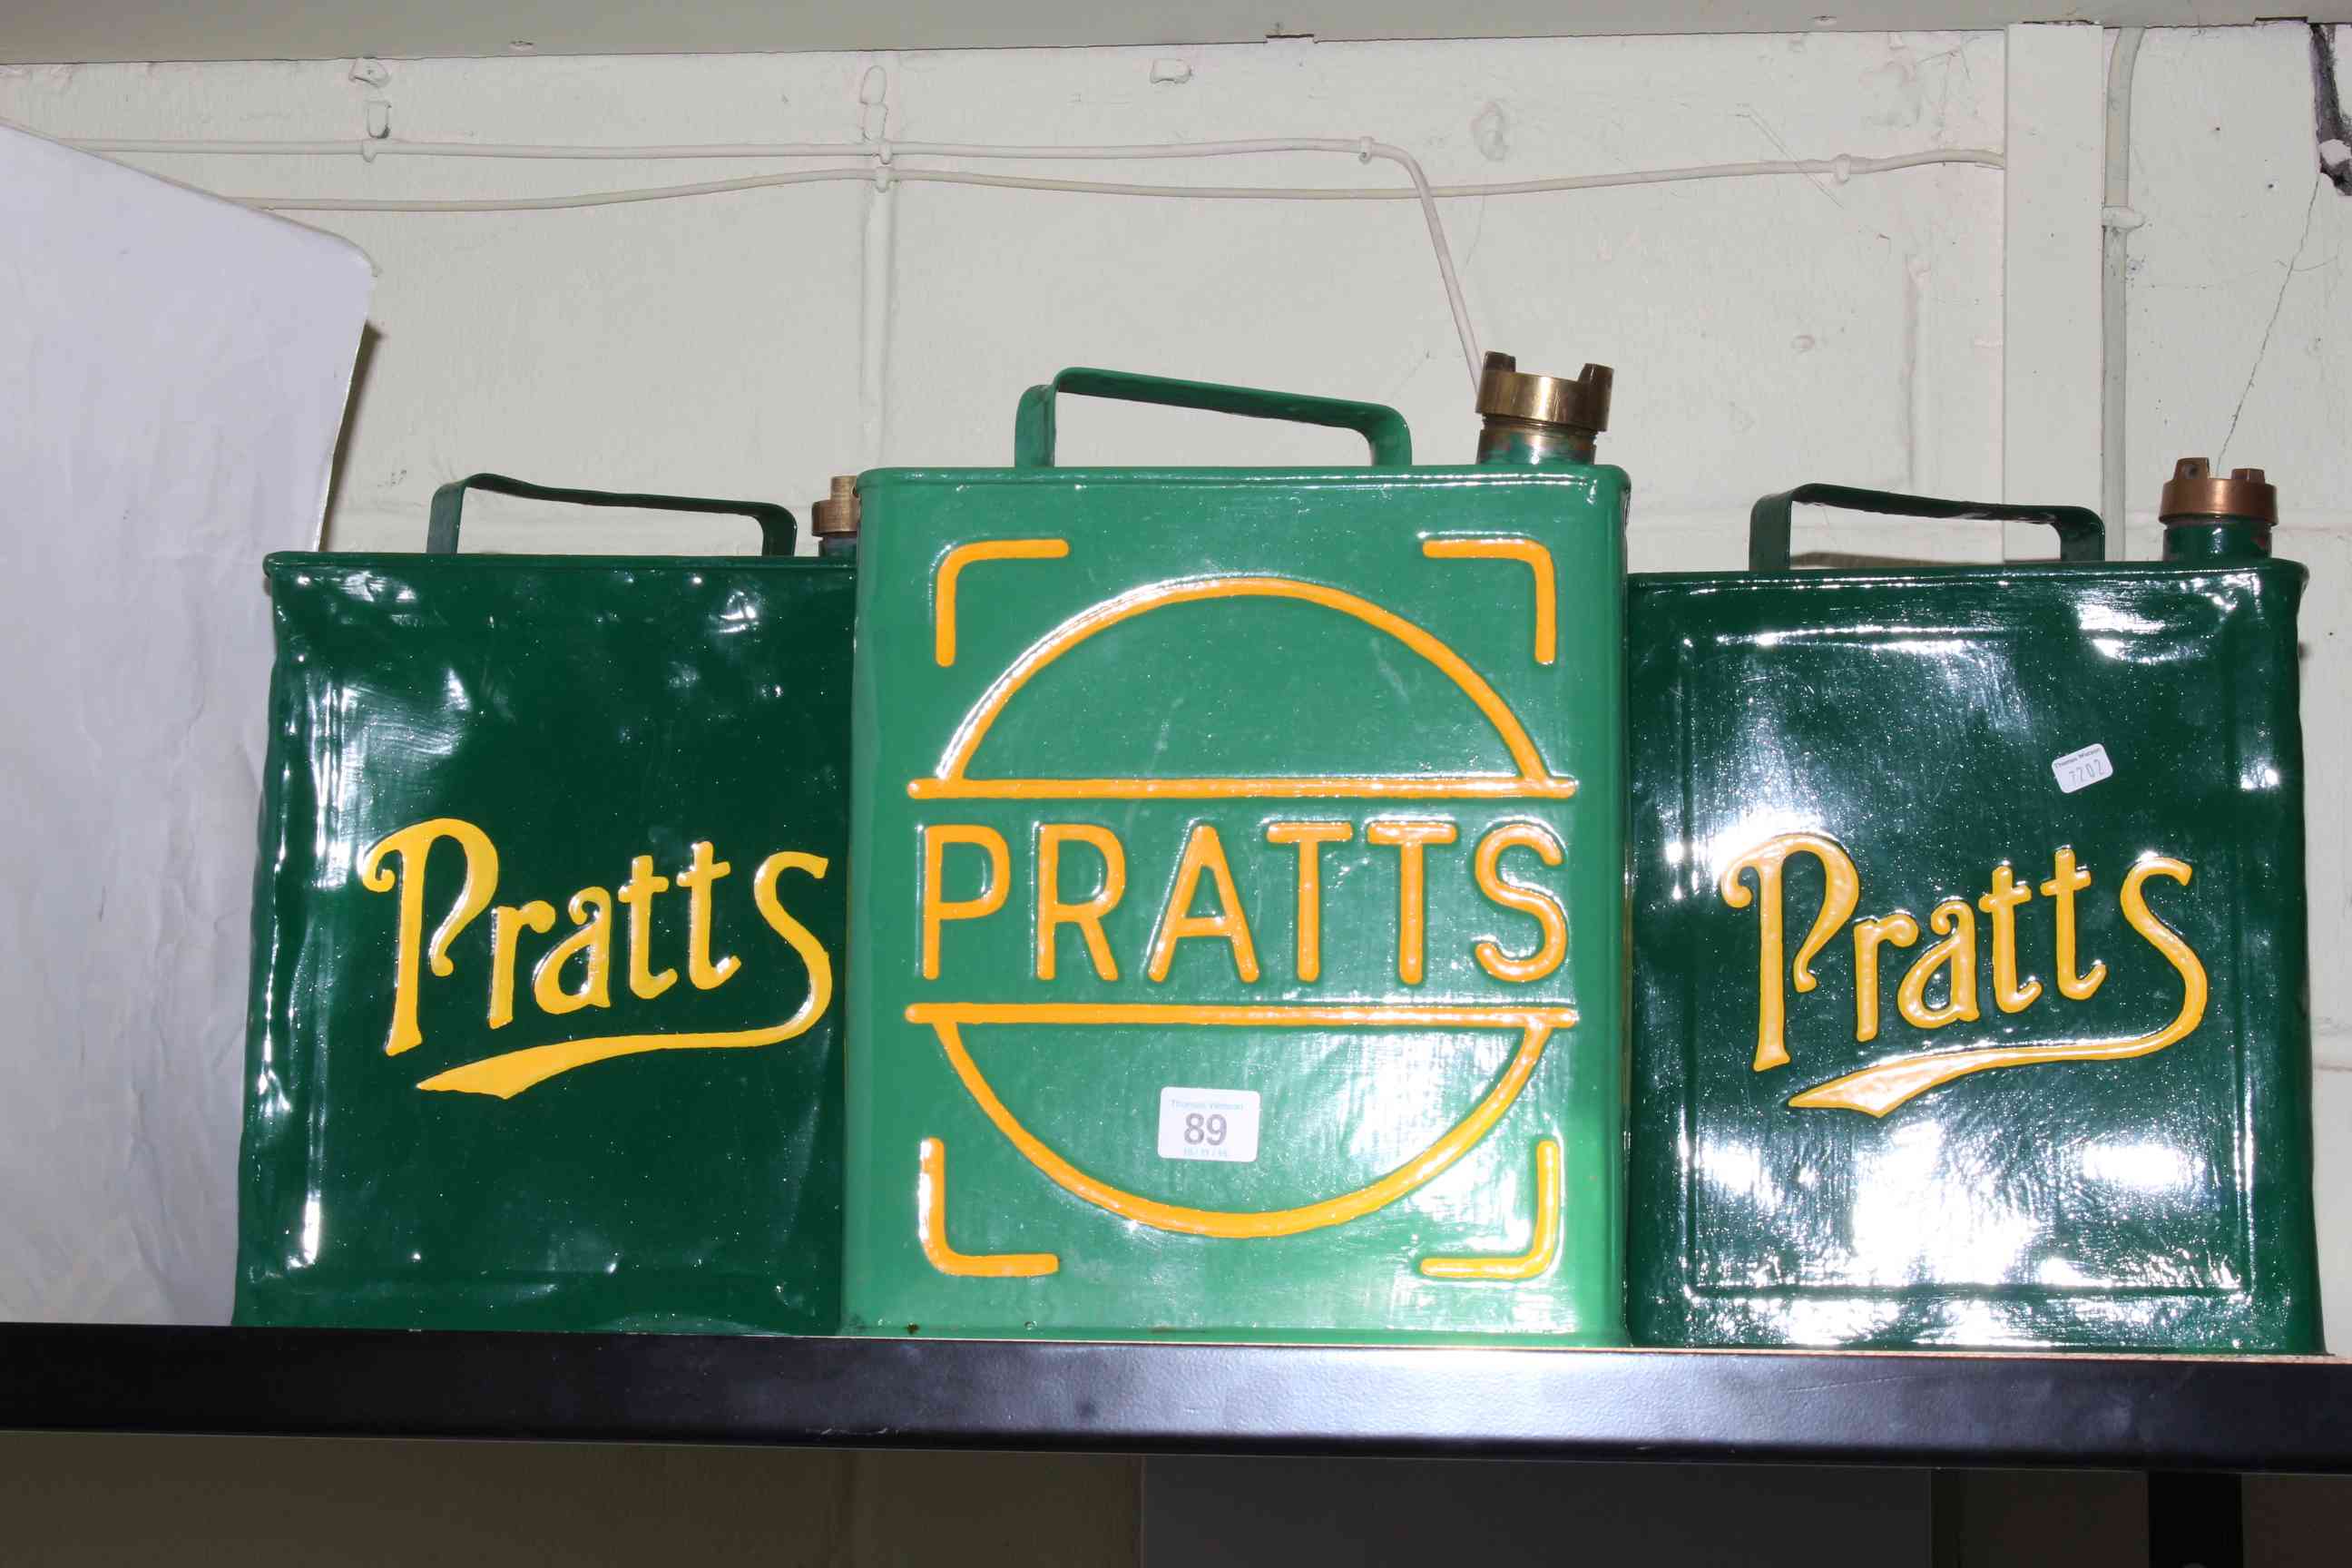 Three Pratt's petrol cans.